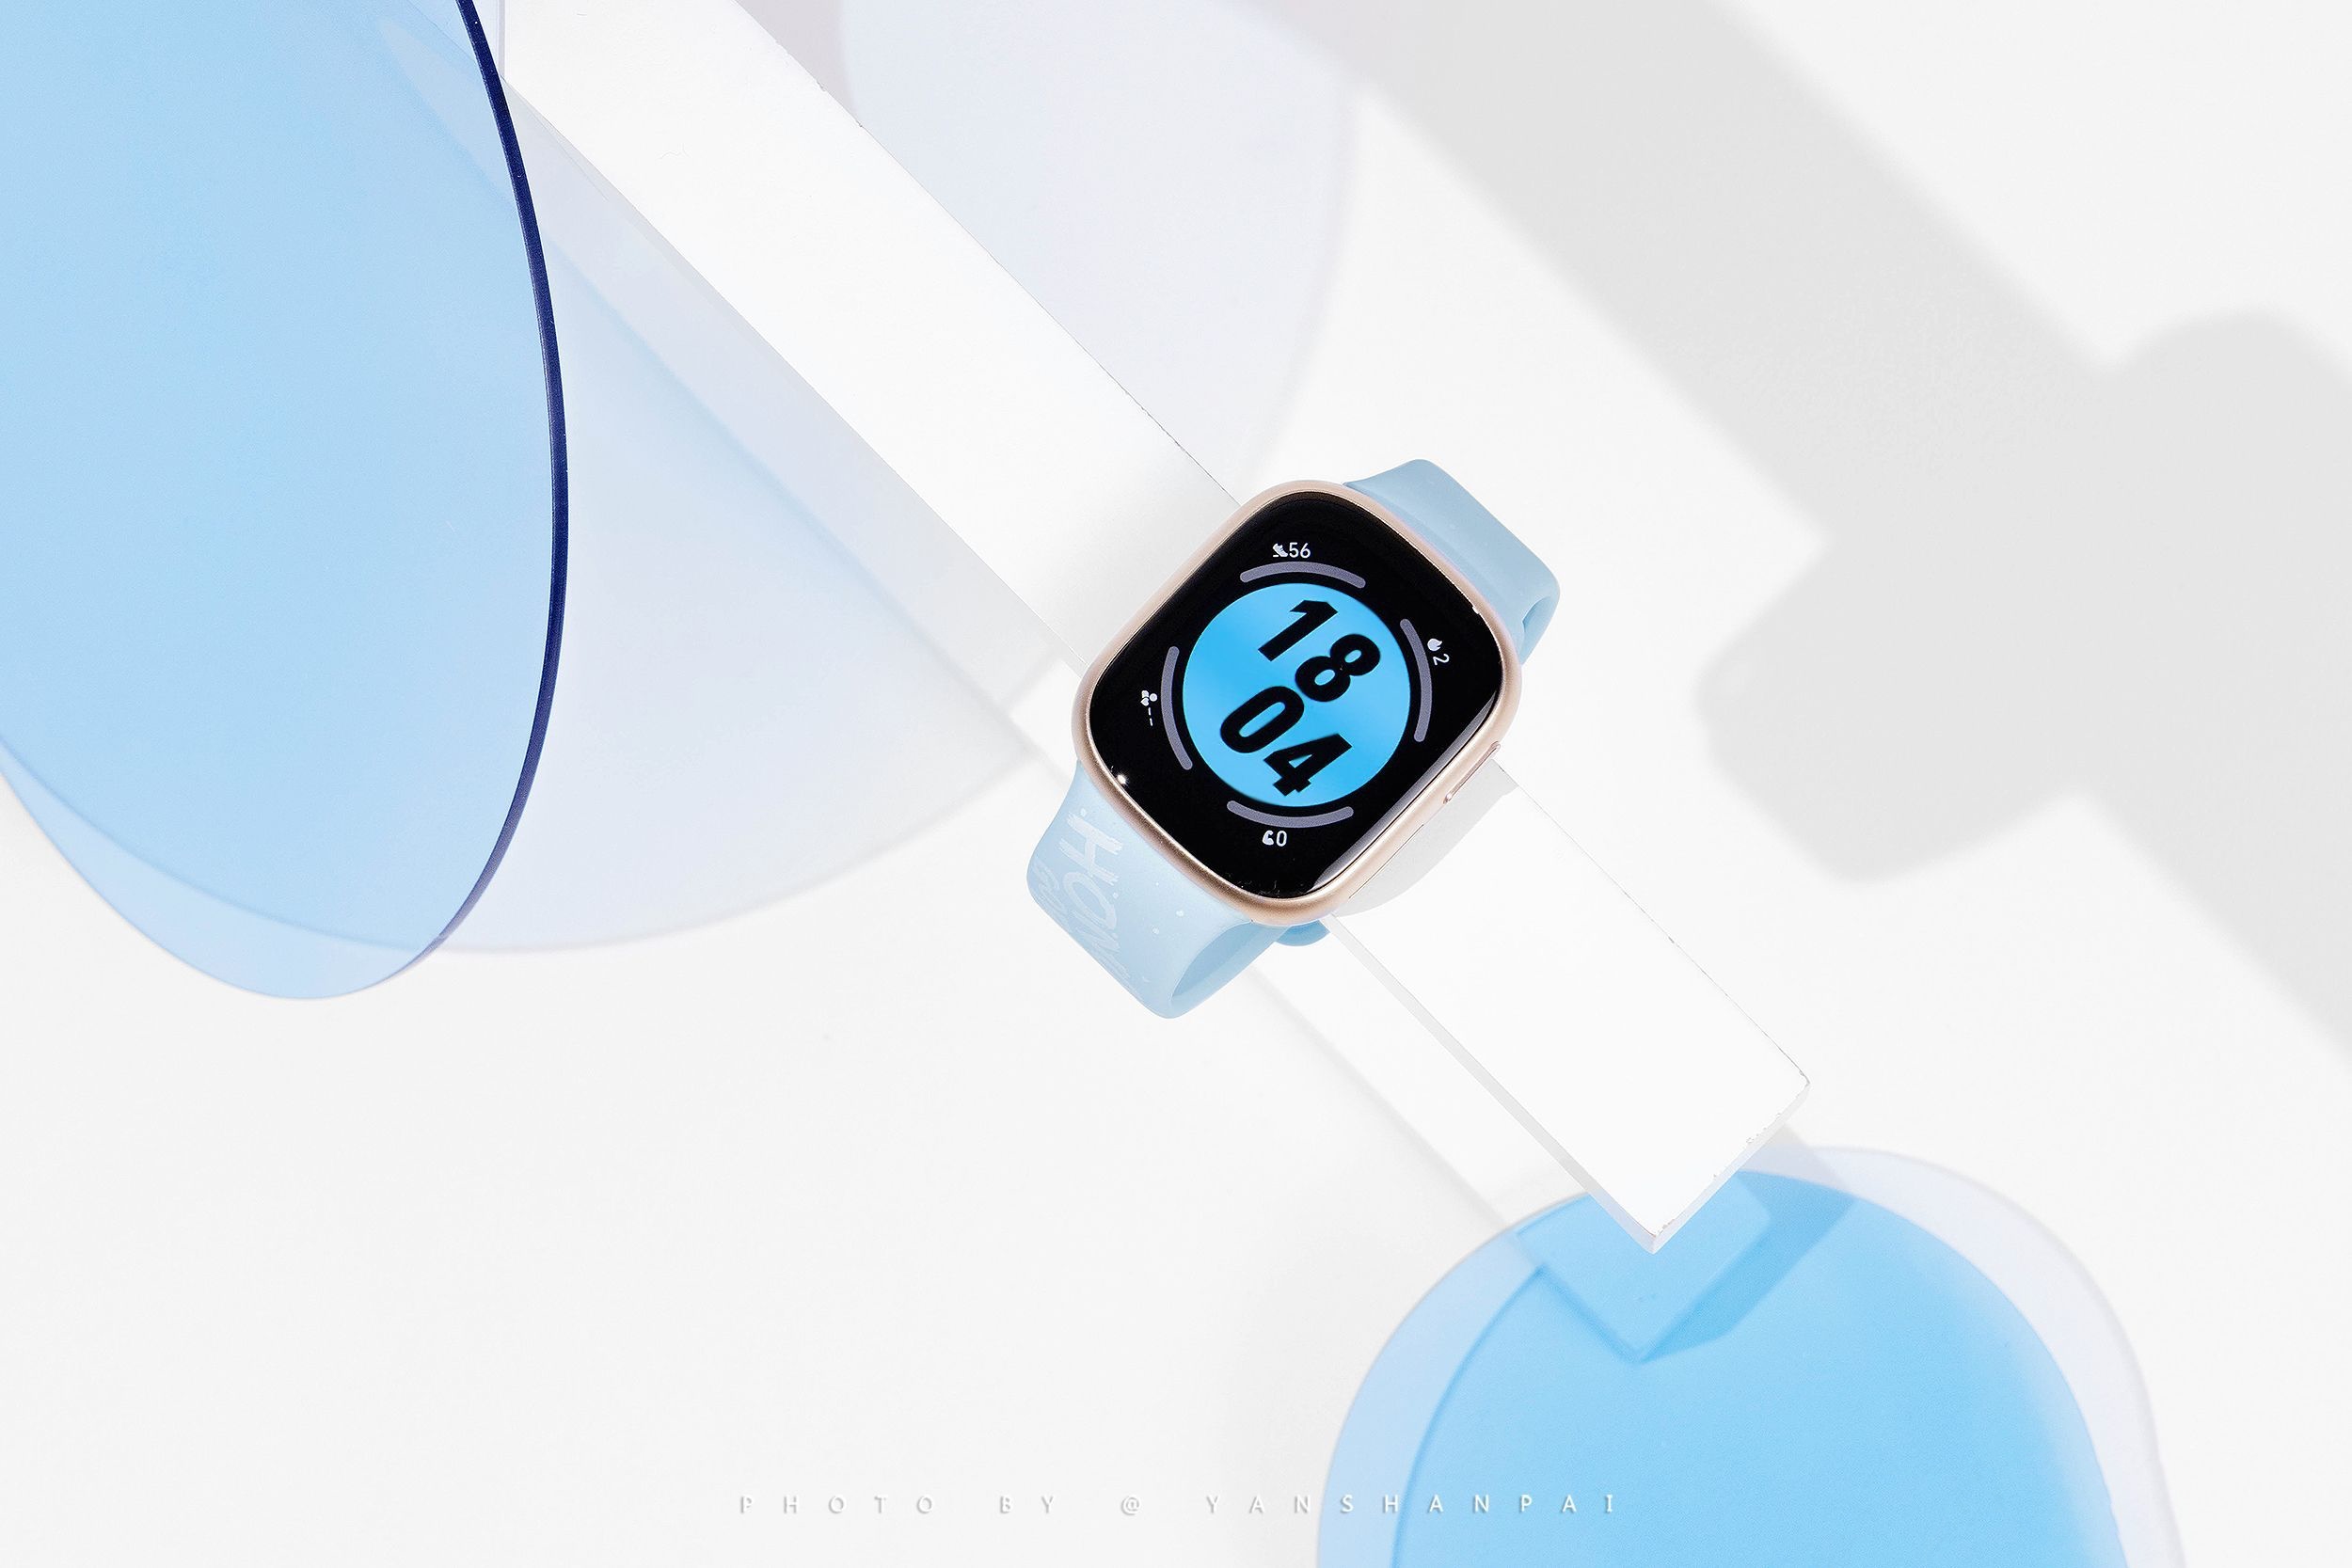 En kopi af Apple Watch: levende billeder af Honor Watch 4 er dukket op på nettet